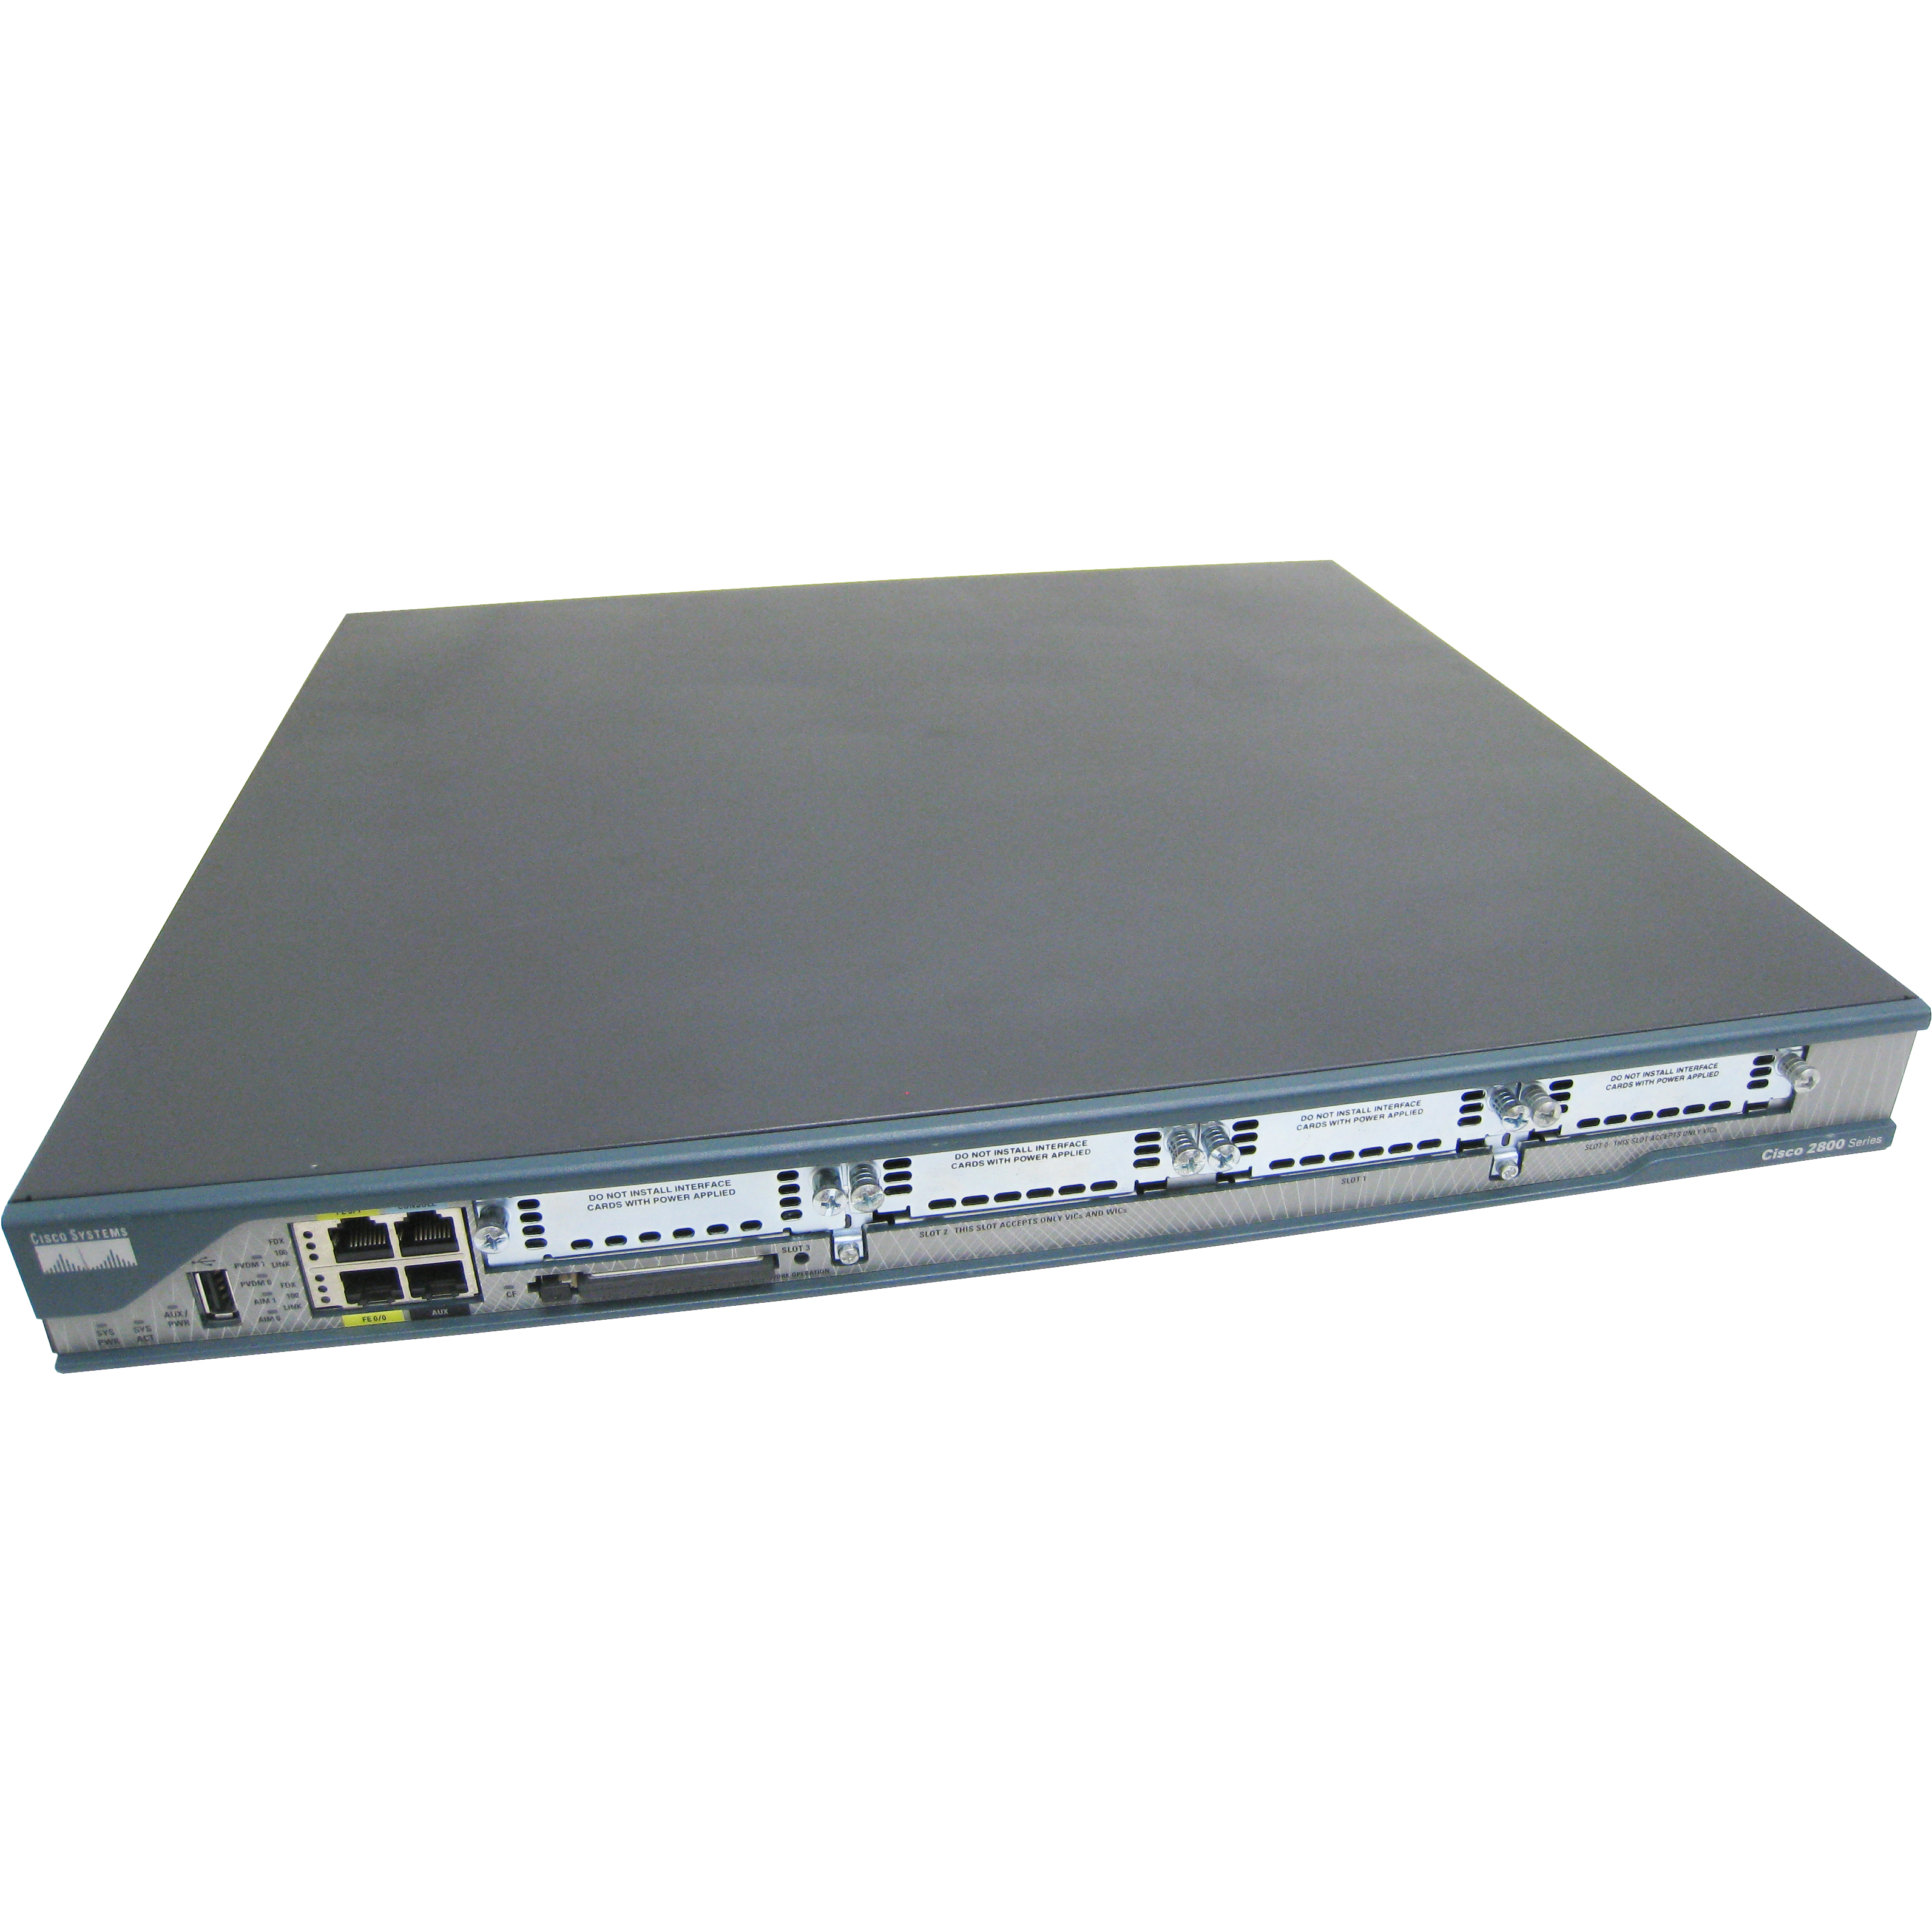 Cisco C2801-VSEC-CCME/K9